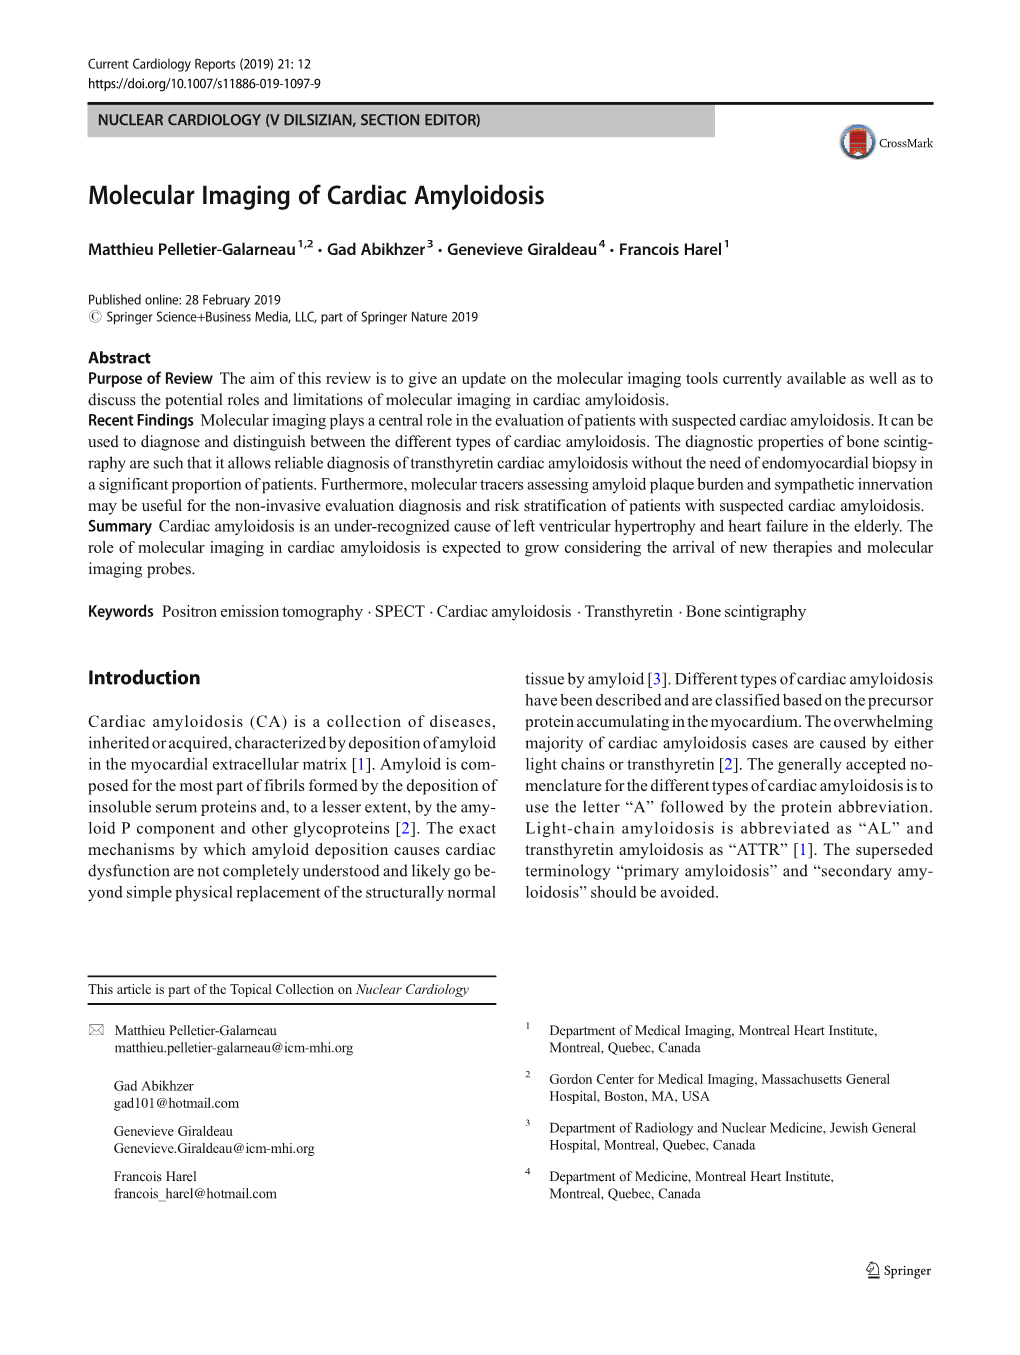 Molecular Imaging of Cardiac Amyloidosis